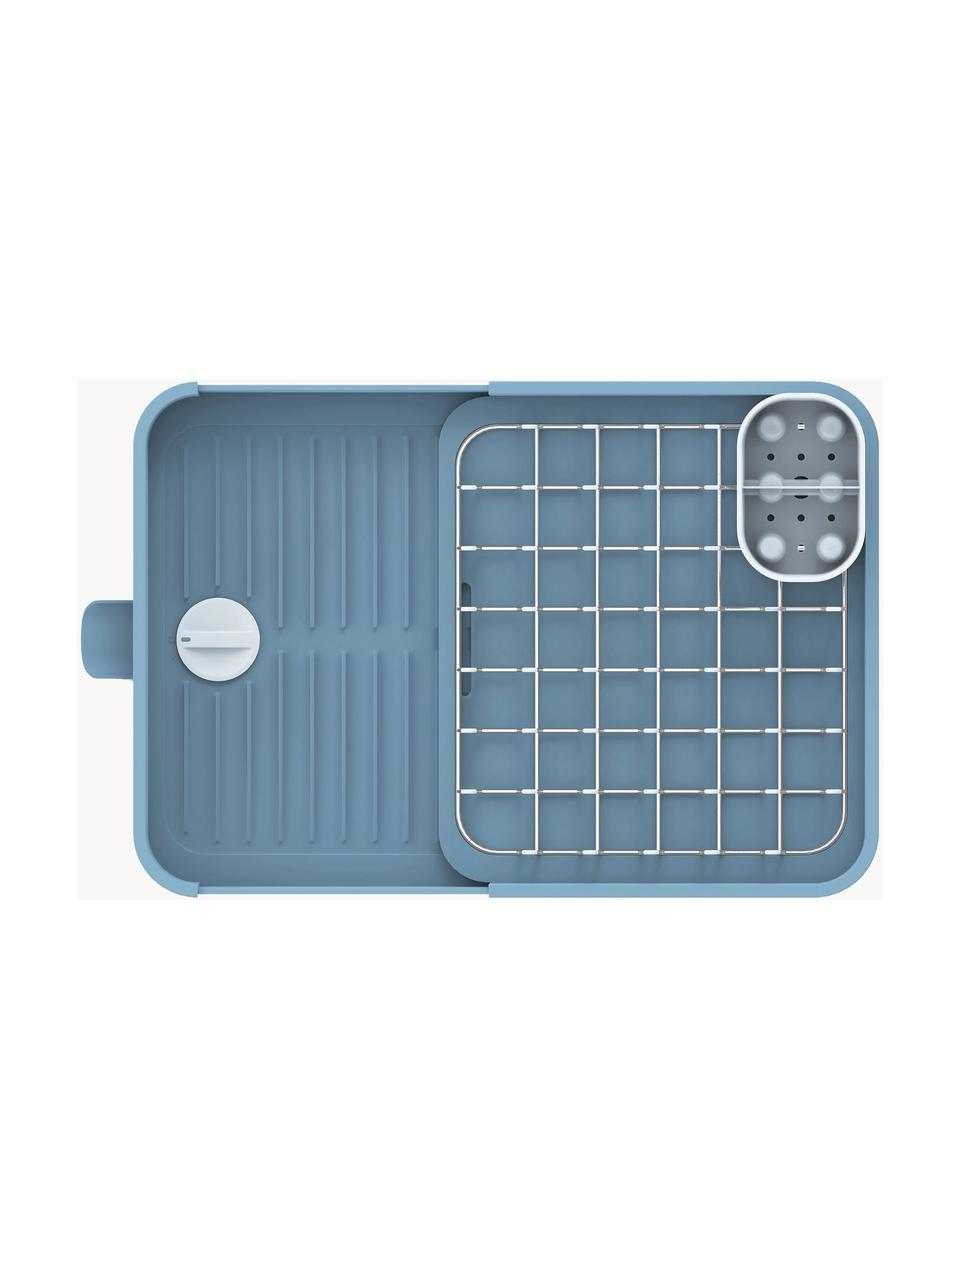 Výsuvný odkapávač na nádobí s nastavitelným výtokem vody Extend, Ocel, polypropylen (PP), Modrá, Š 36 cm, V 16 cm